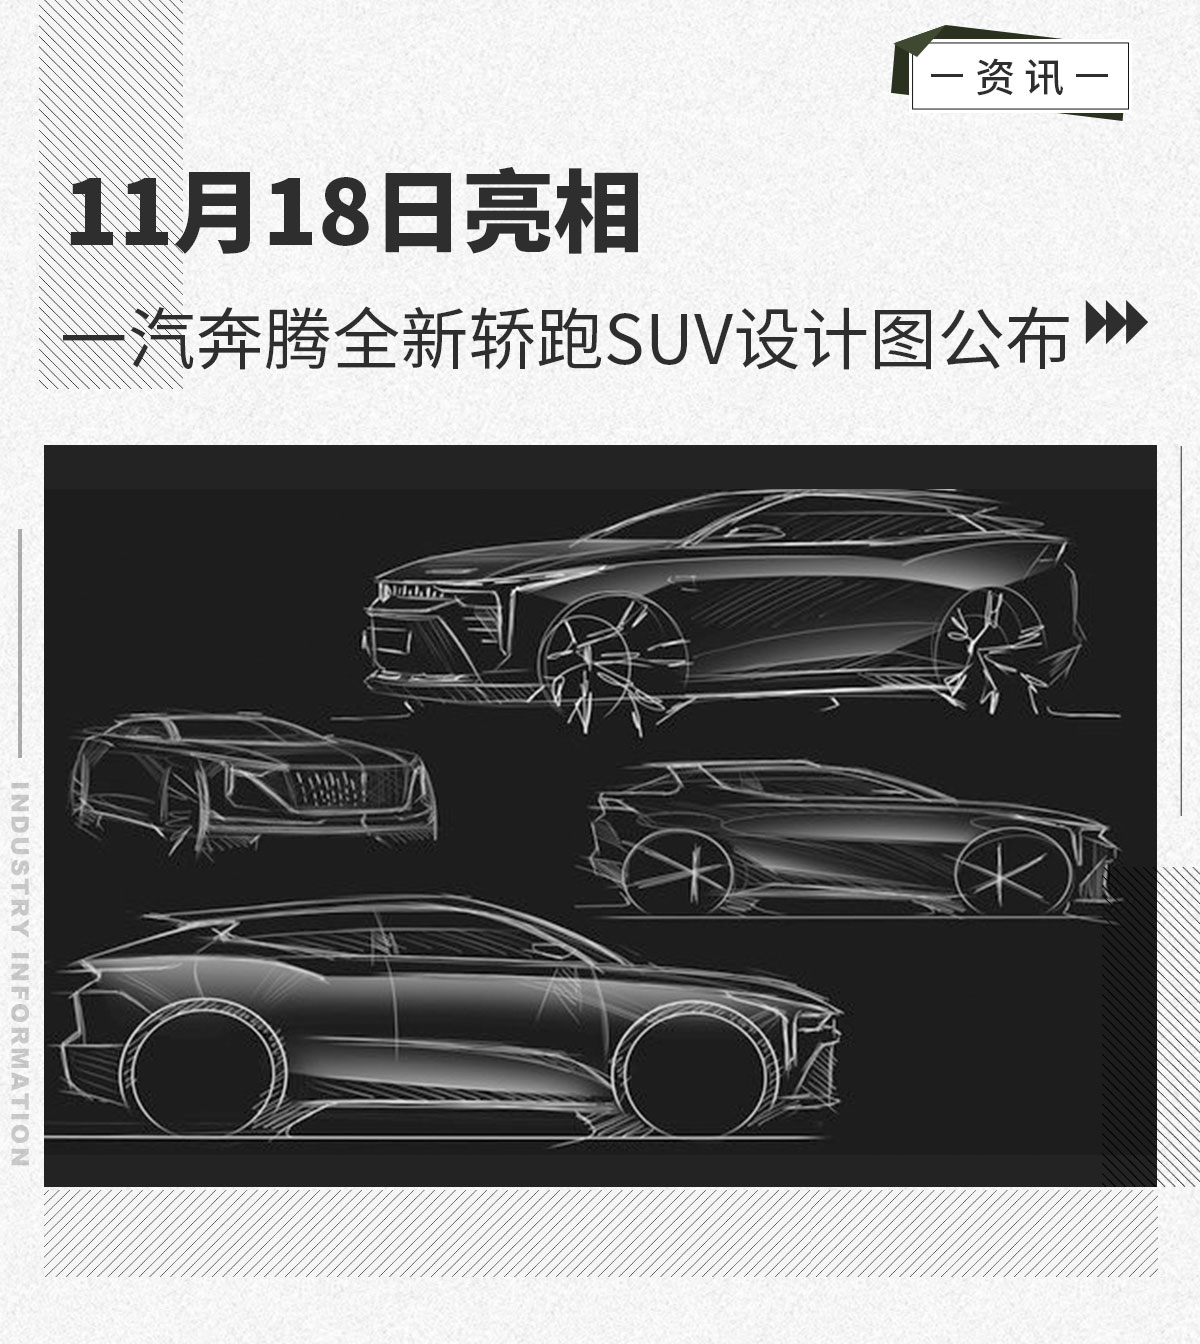 11月18日亮相一汽奔腾全新轿跑SUV设计图公布